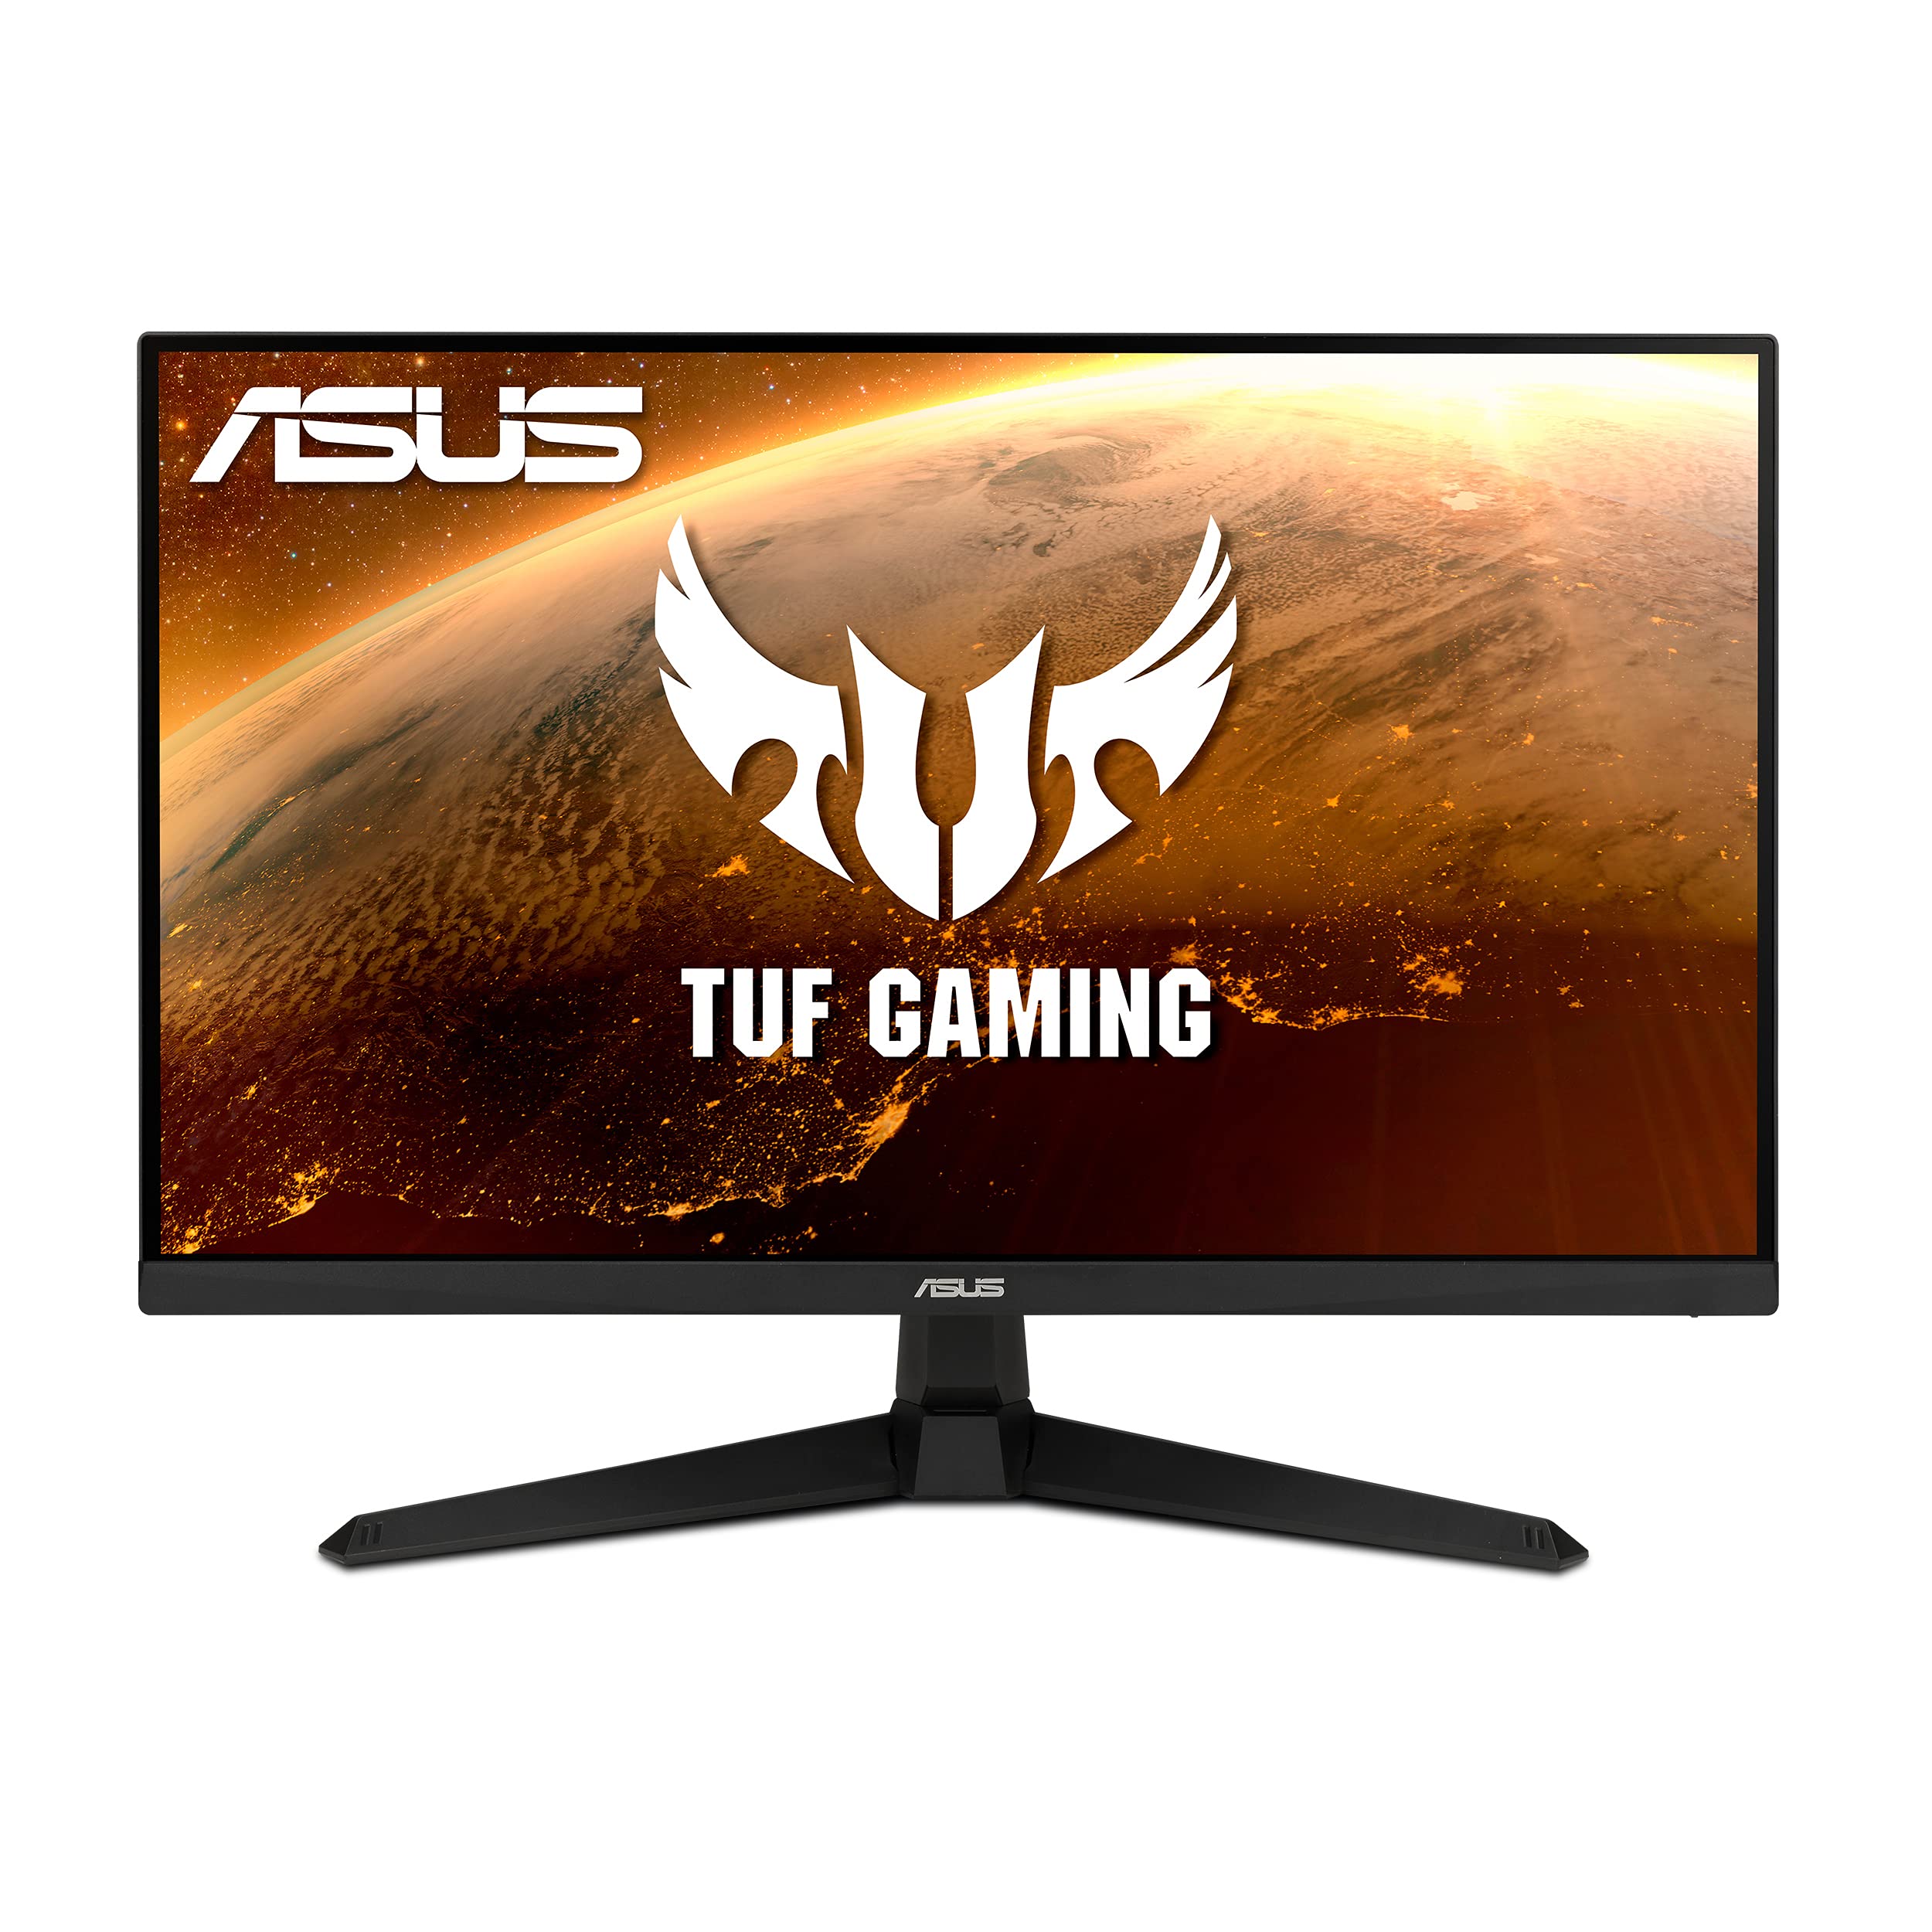  Asus TUF Gaming 27 1080P ゲーミング モニター (VG277Q1A) - フル HD、165Hz (144Hz をサポート)、1ms、超低モーション ブラー、FreeSync プレミアム、シャドウ ブー...